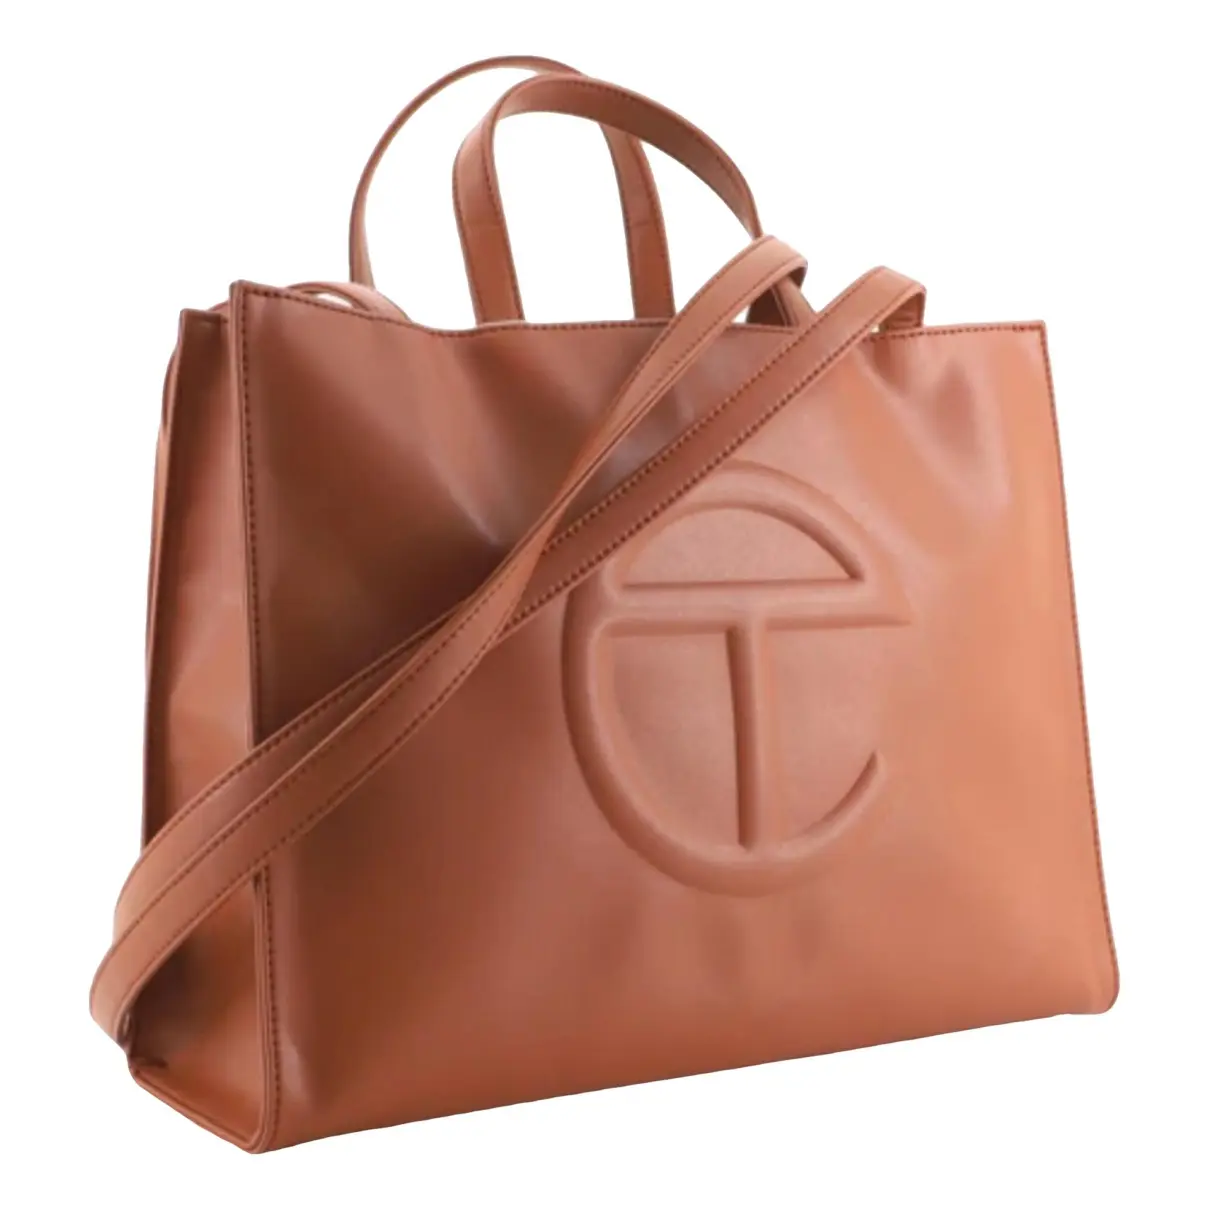 Medium Shopping Bag handbag